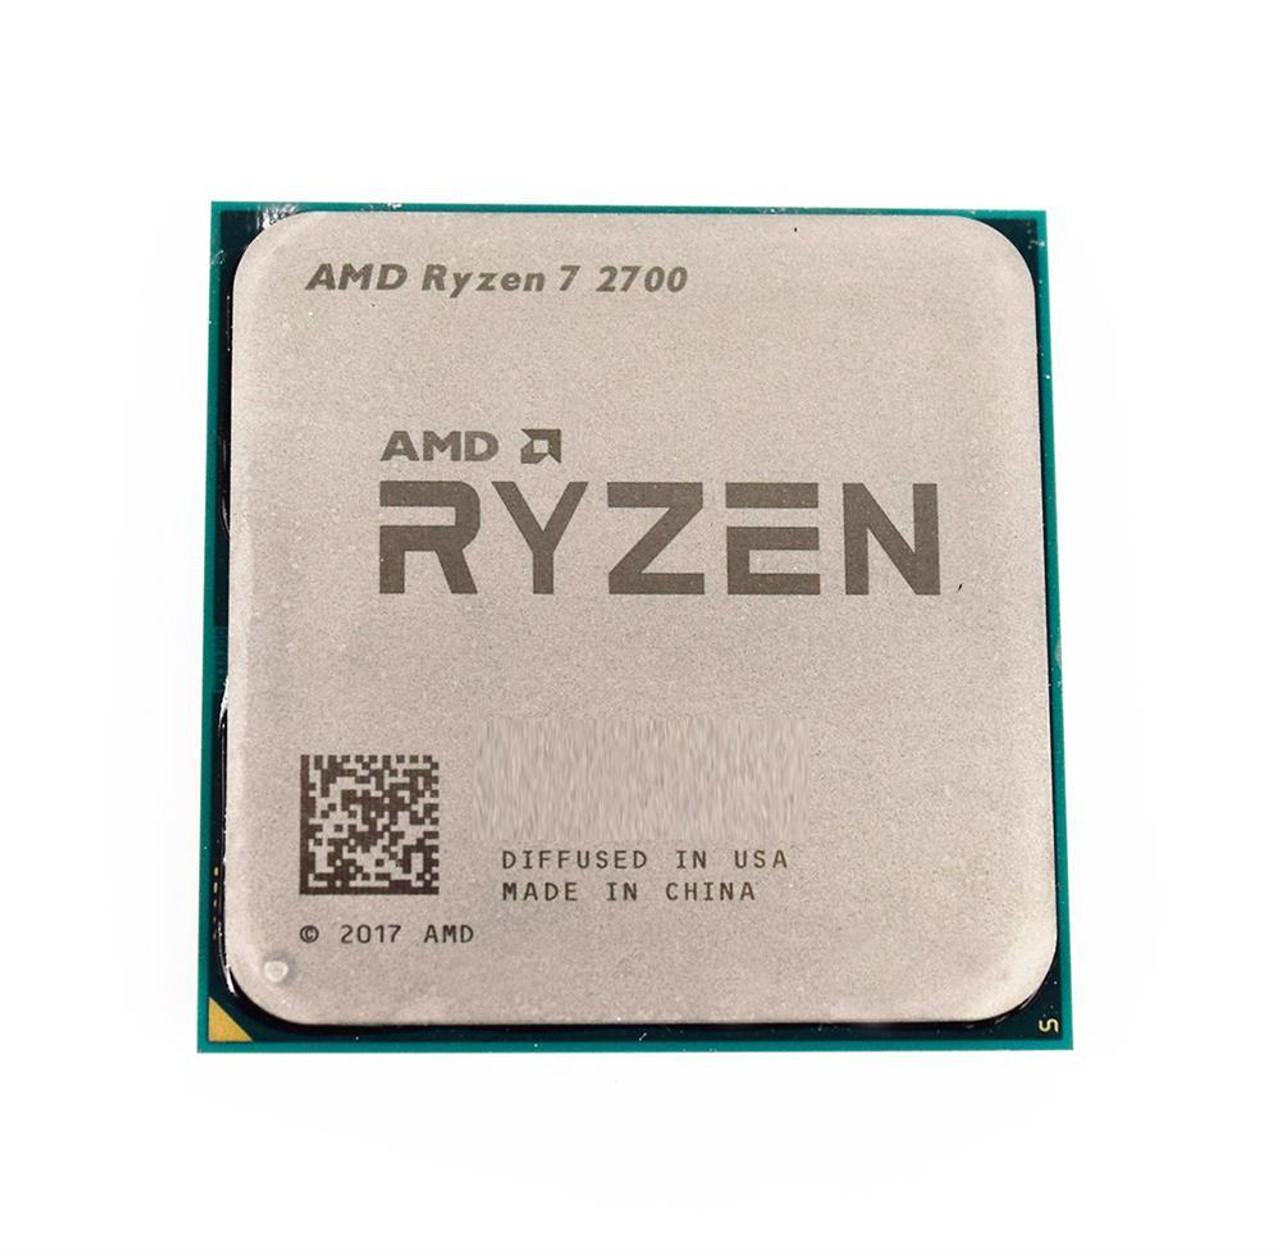 AMD Ryzen 7 2700 8-Core 3.20GHz 16MB L3 Cache Socket AM4 Processor Ryzen 7